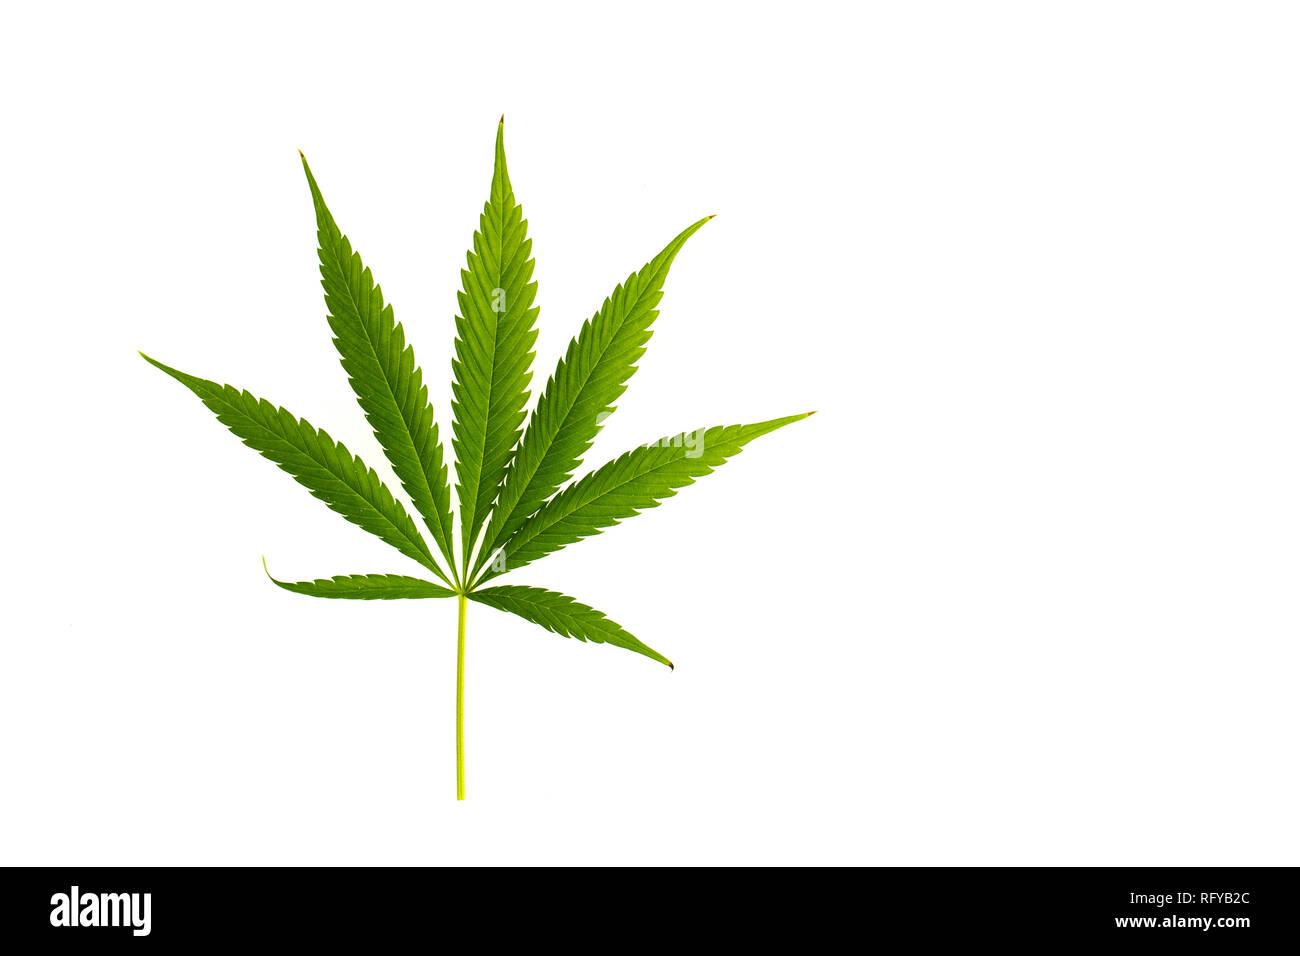 Green Marijuana leaf isolated on white background Stock Photo